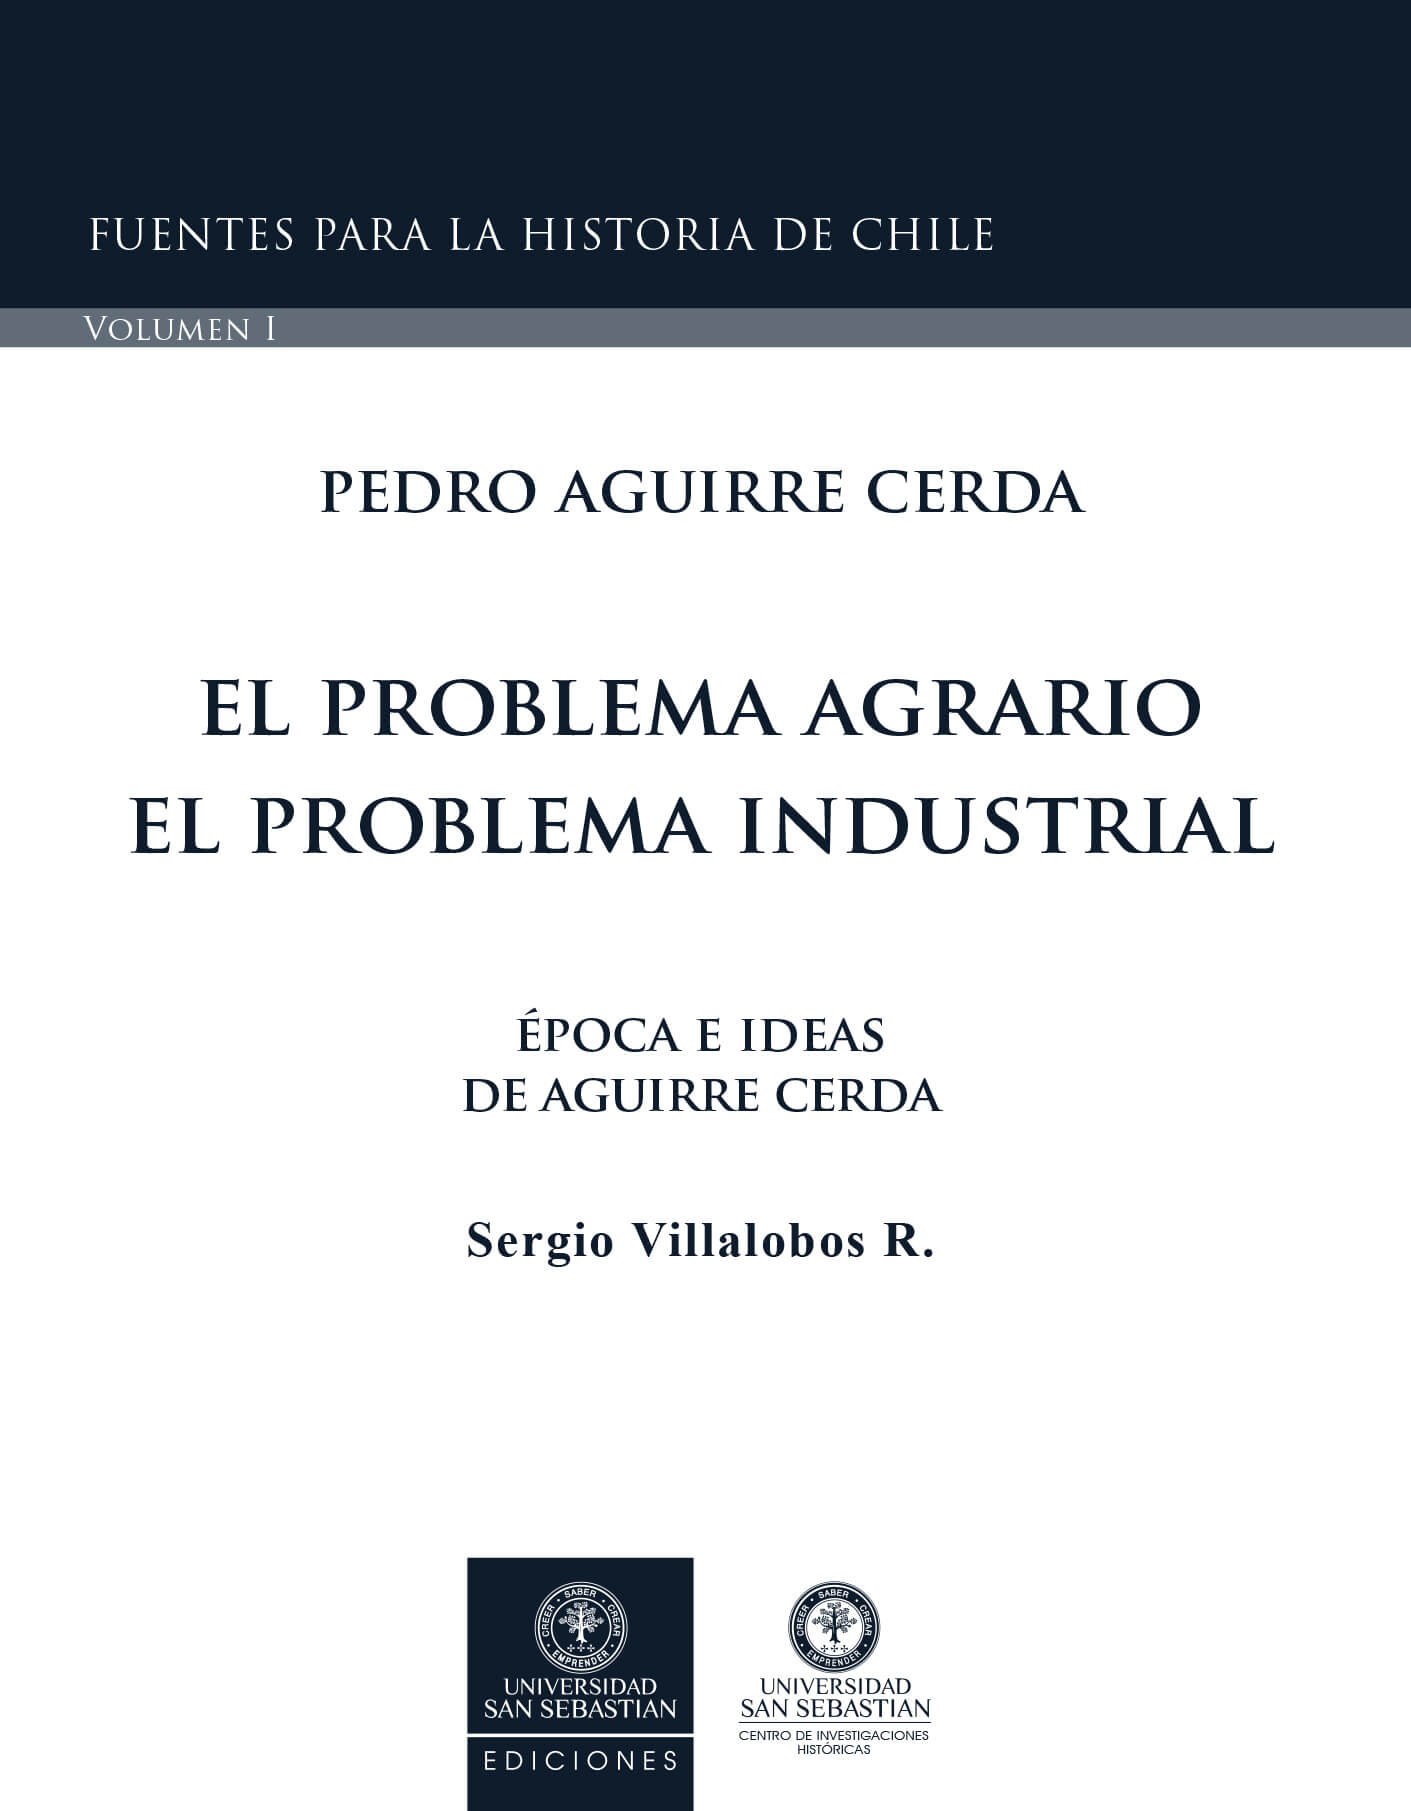 PEDRO AGUIRRE CERDA. EL PROBLEMA AGRARIO. EL PROBLEMA INDUSTRIAL Época e Ideas de Aguirre Cerda